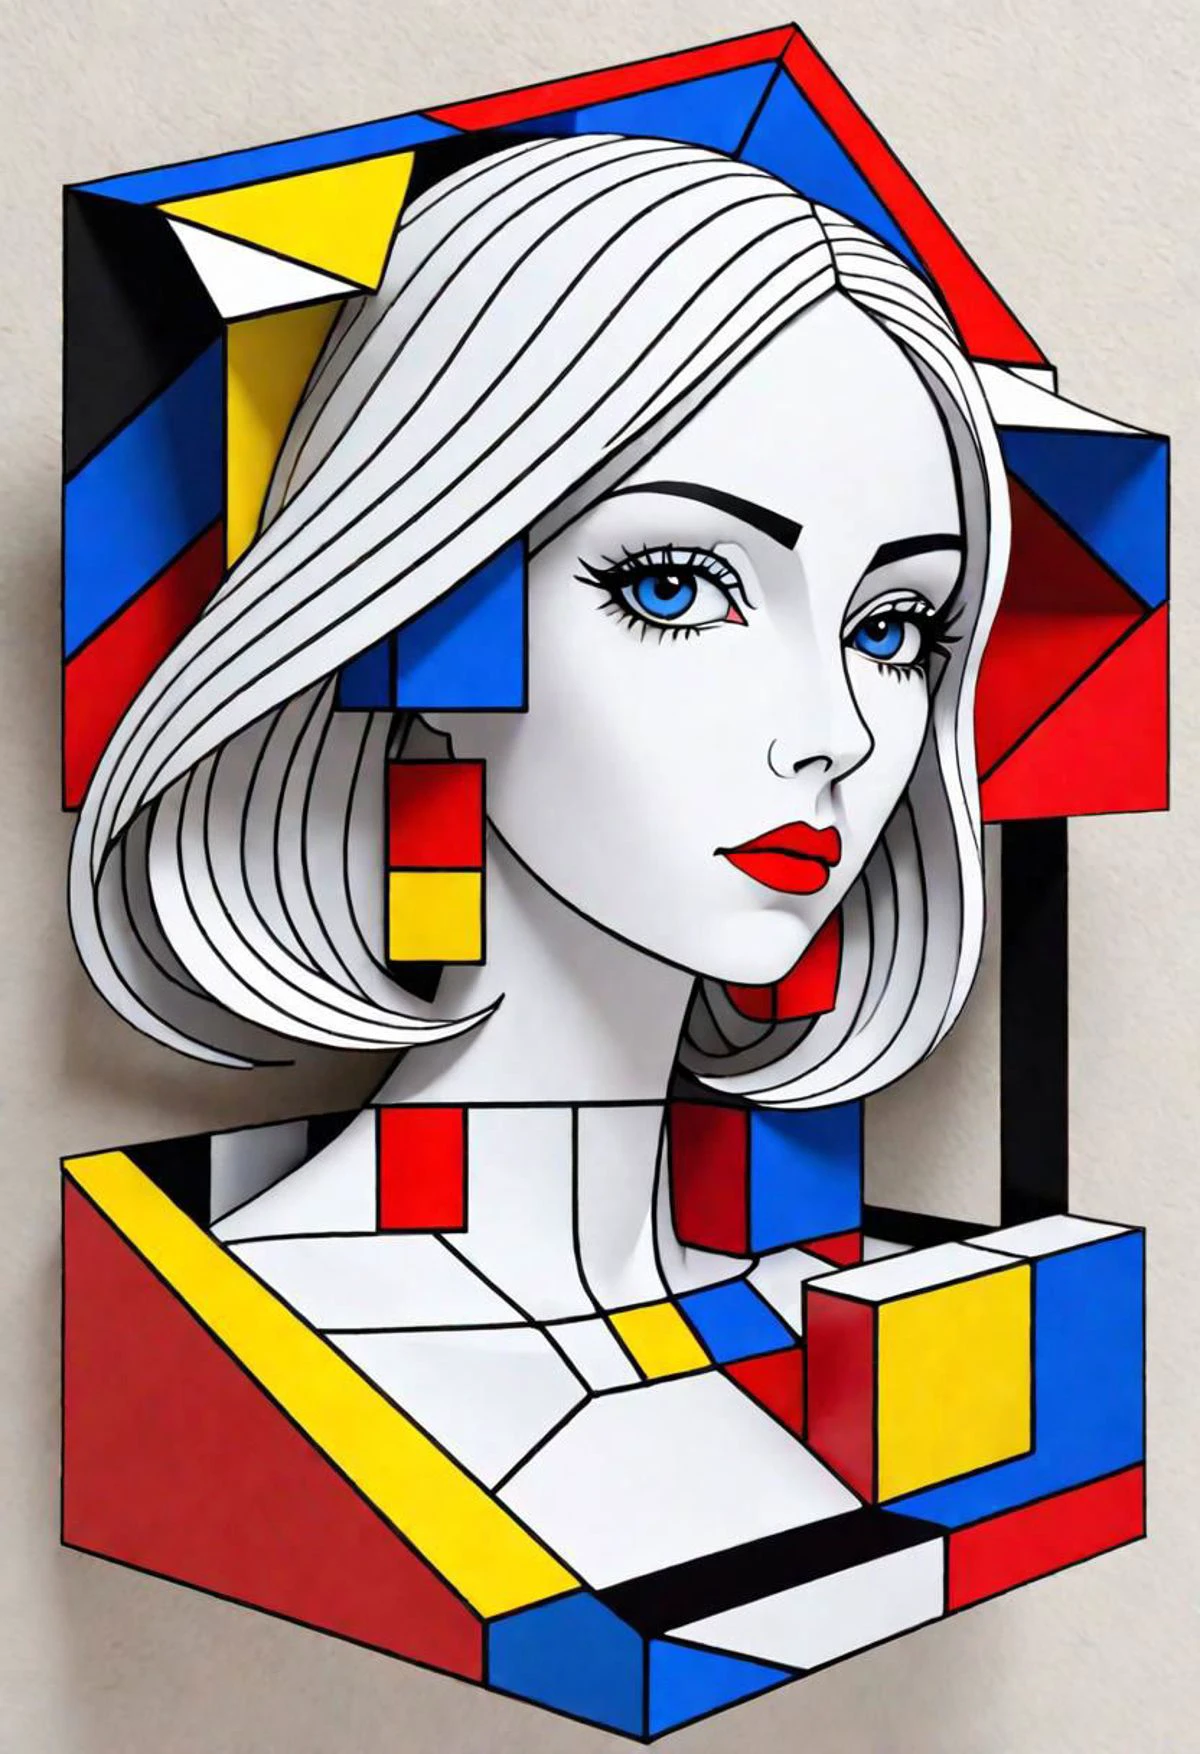 3D, شكل هندسي مستحيل, امرأة من ورق, متداخلة, رائع, متناغم, الجميلة والجمالية, اللون مستوحى من موندريان, فازاريلي